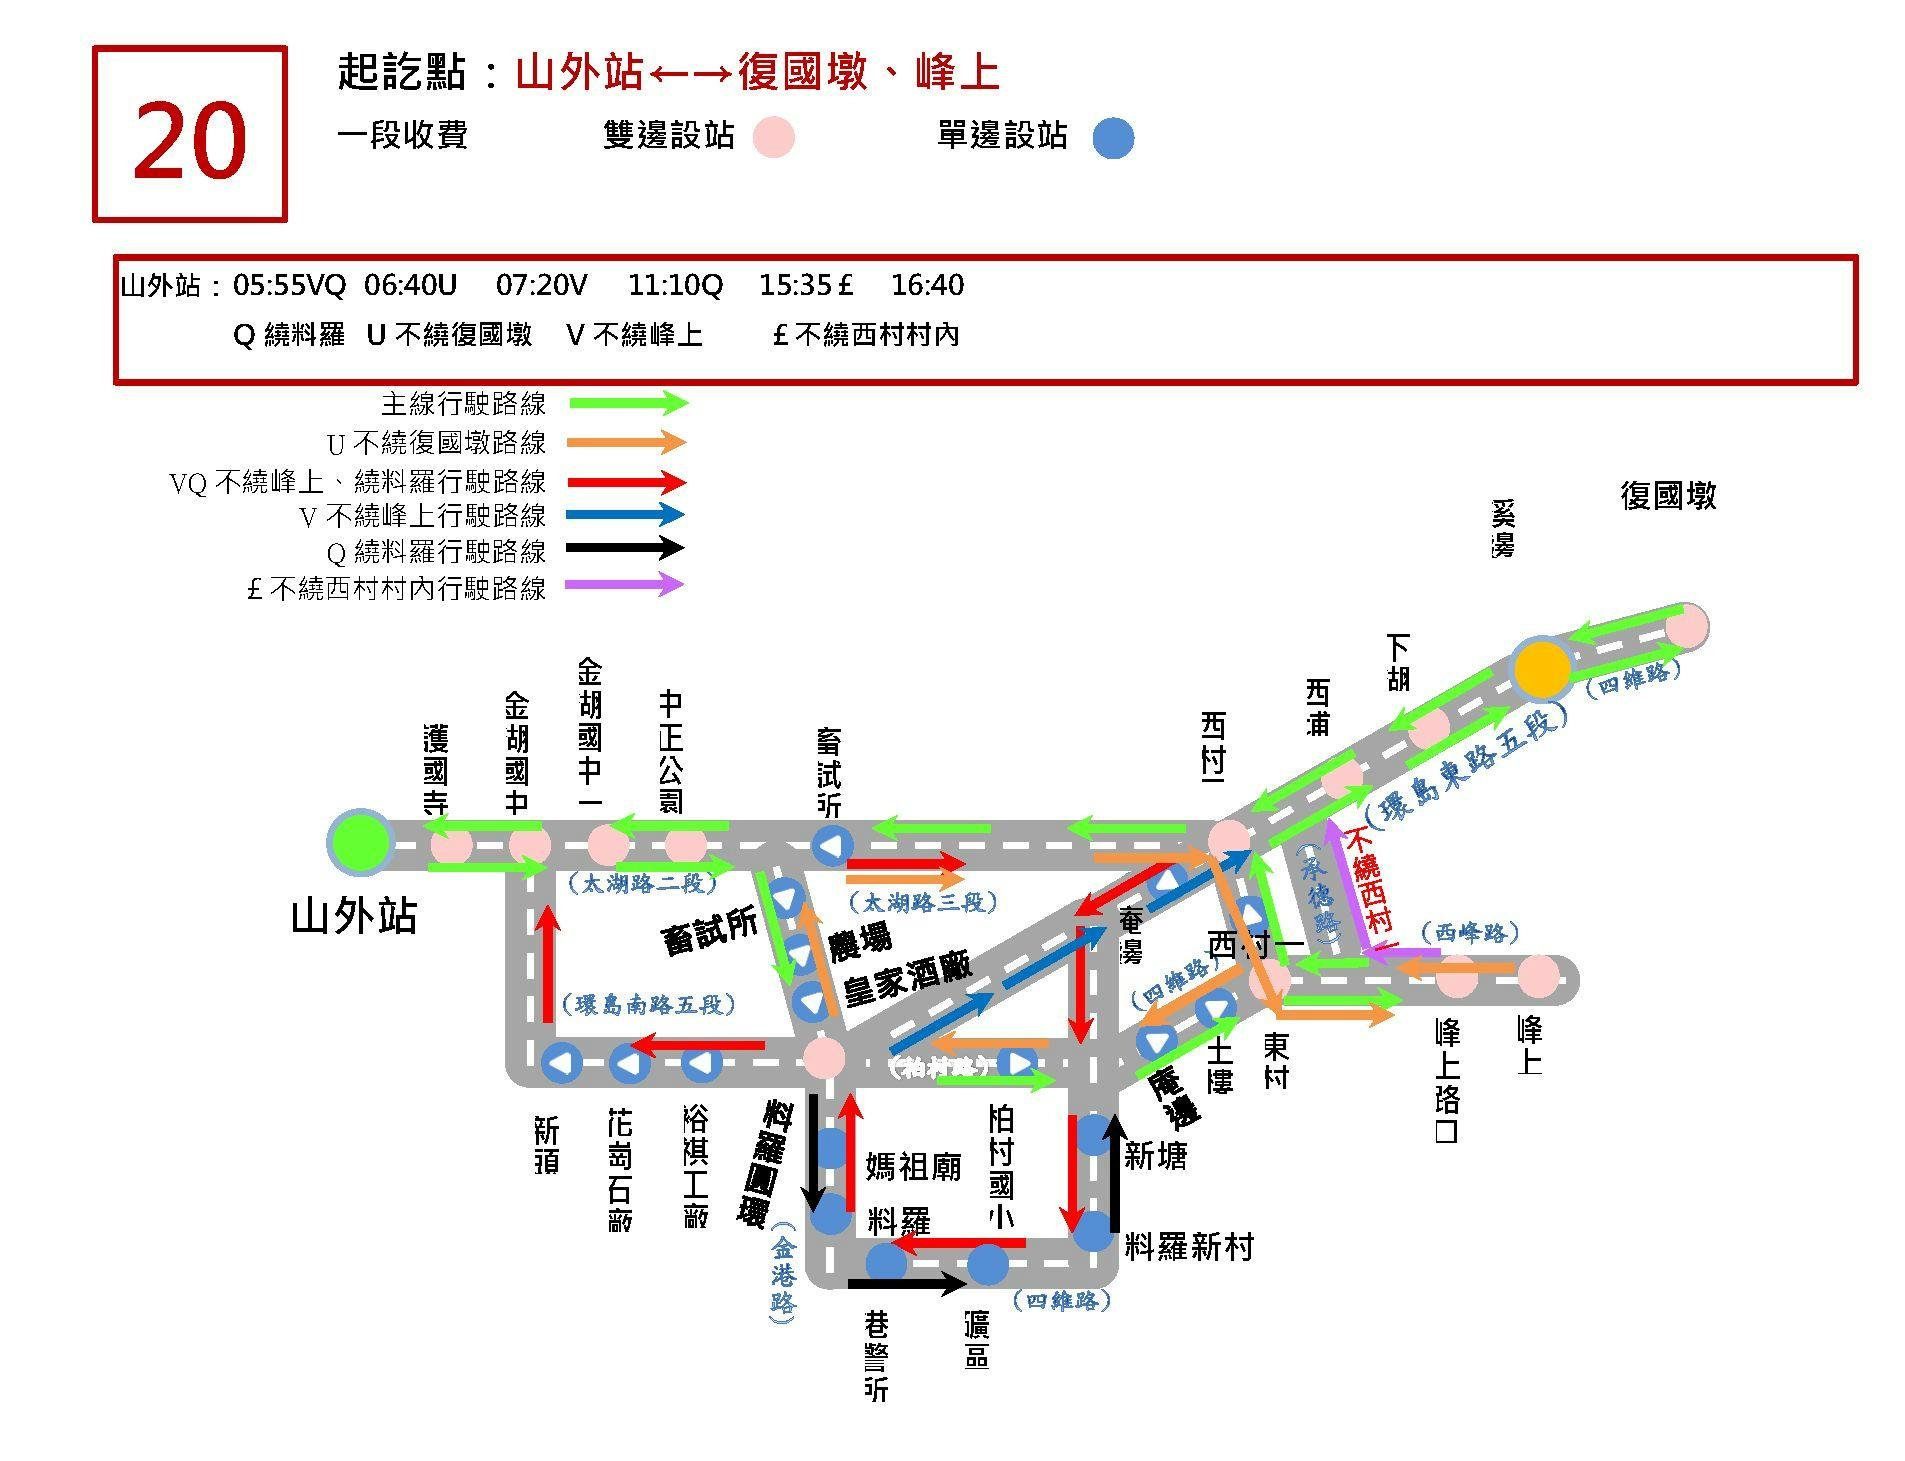 20 skip Xicun IRoute Map-金門 Bus